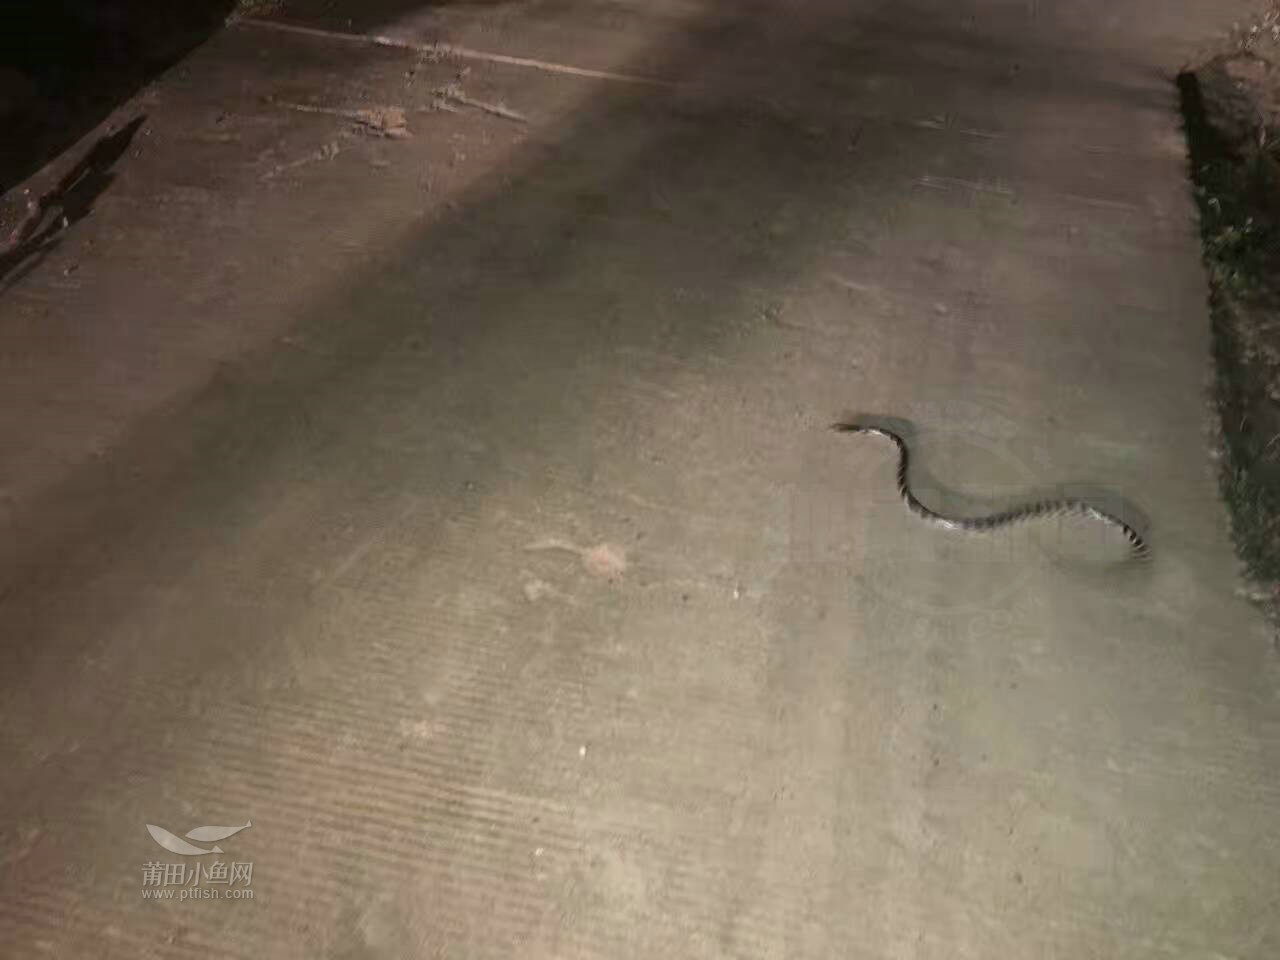 半夜在山里偶遇剧毒银环蛇,是世界上最毒的蛇